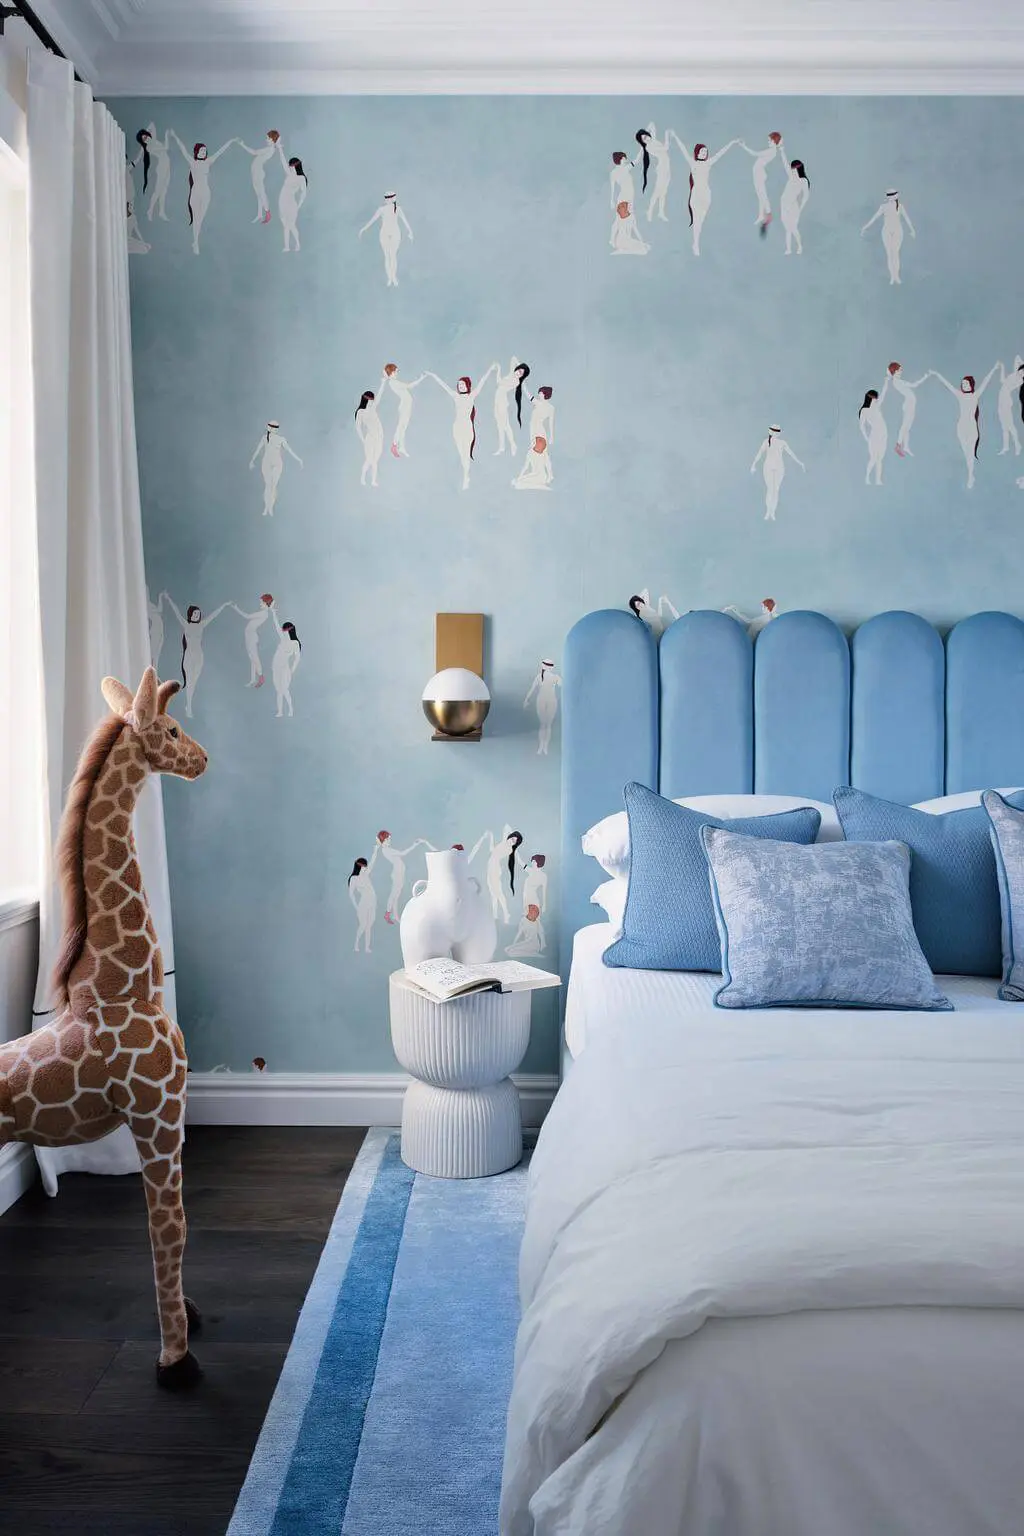 Kids bedroom in blue tones